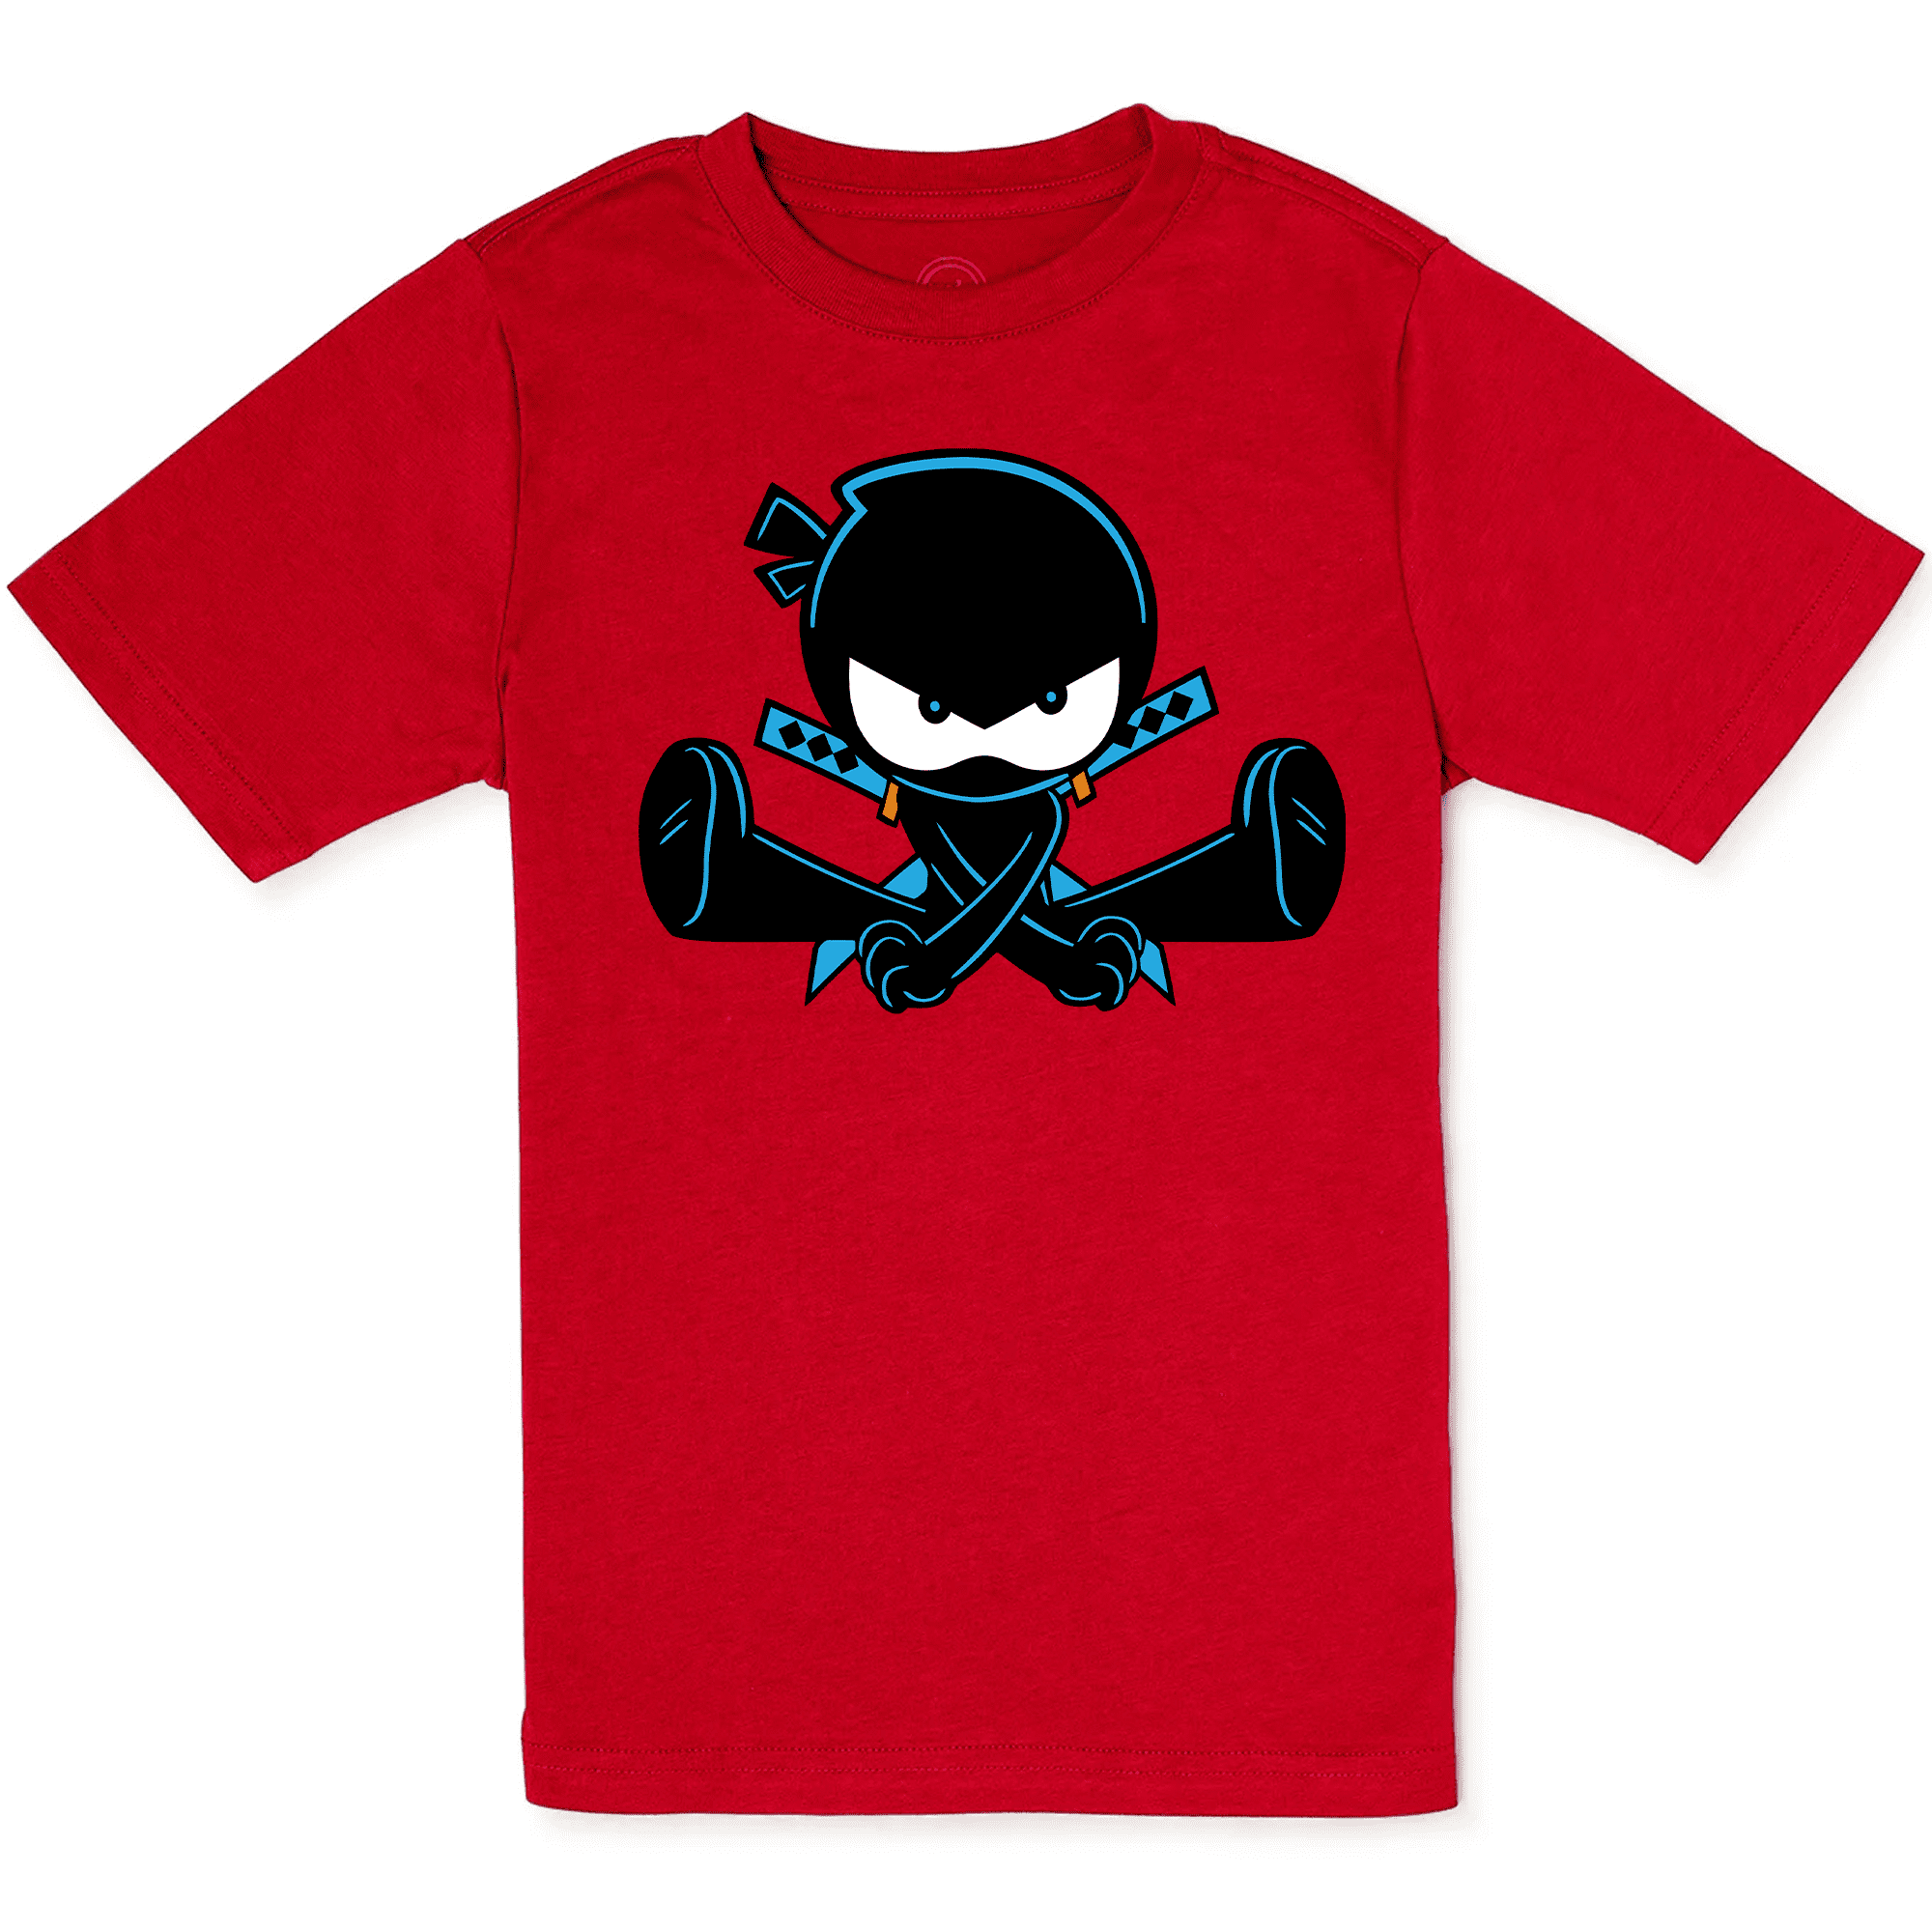 Ninja Disguise T-shirt – Kicking Clothing